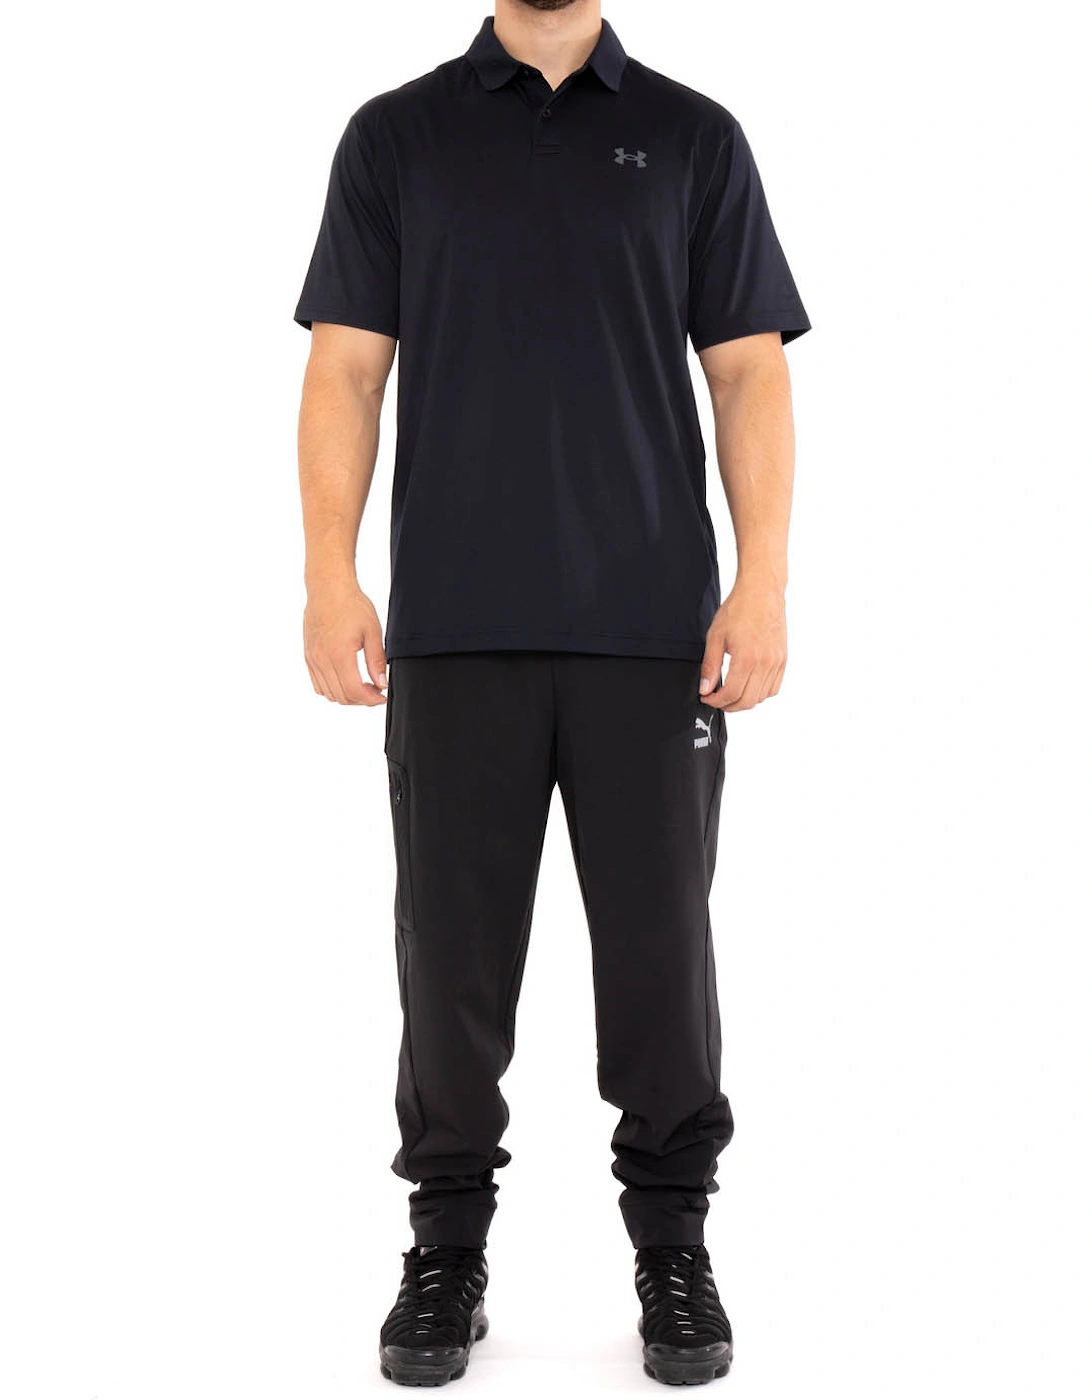 Mens Performance 2.0 Polo Shirt (Black)